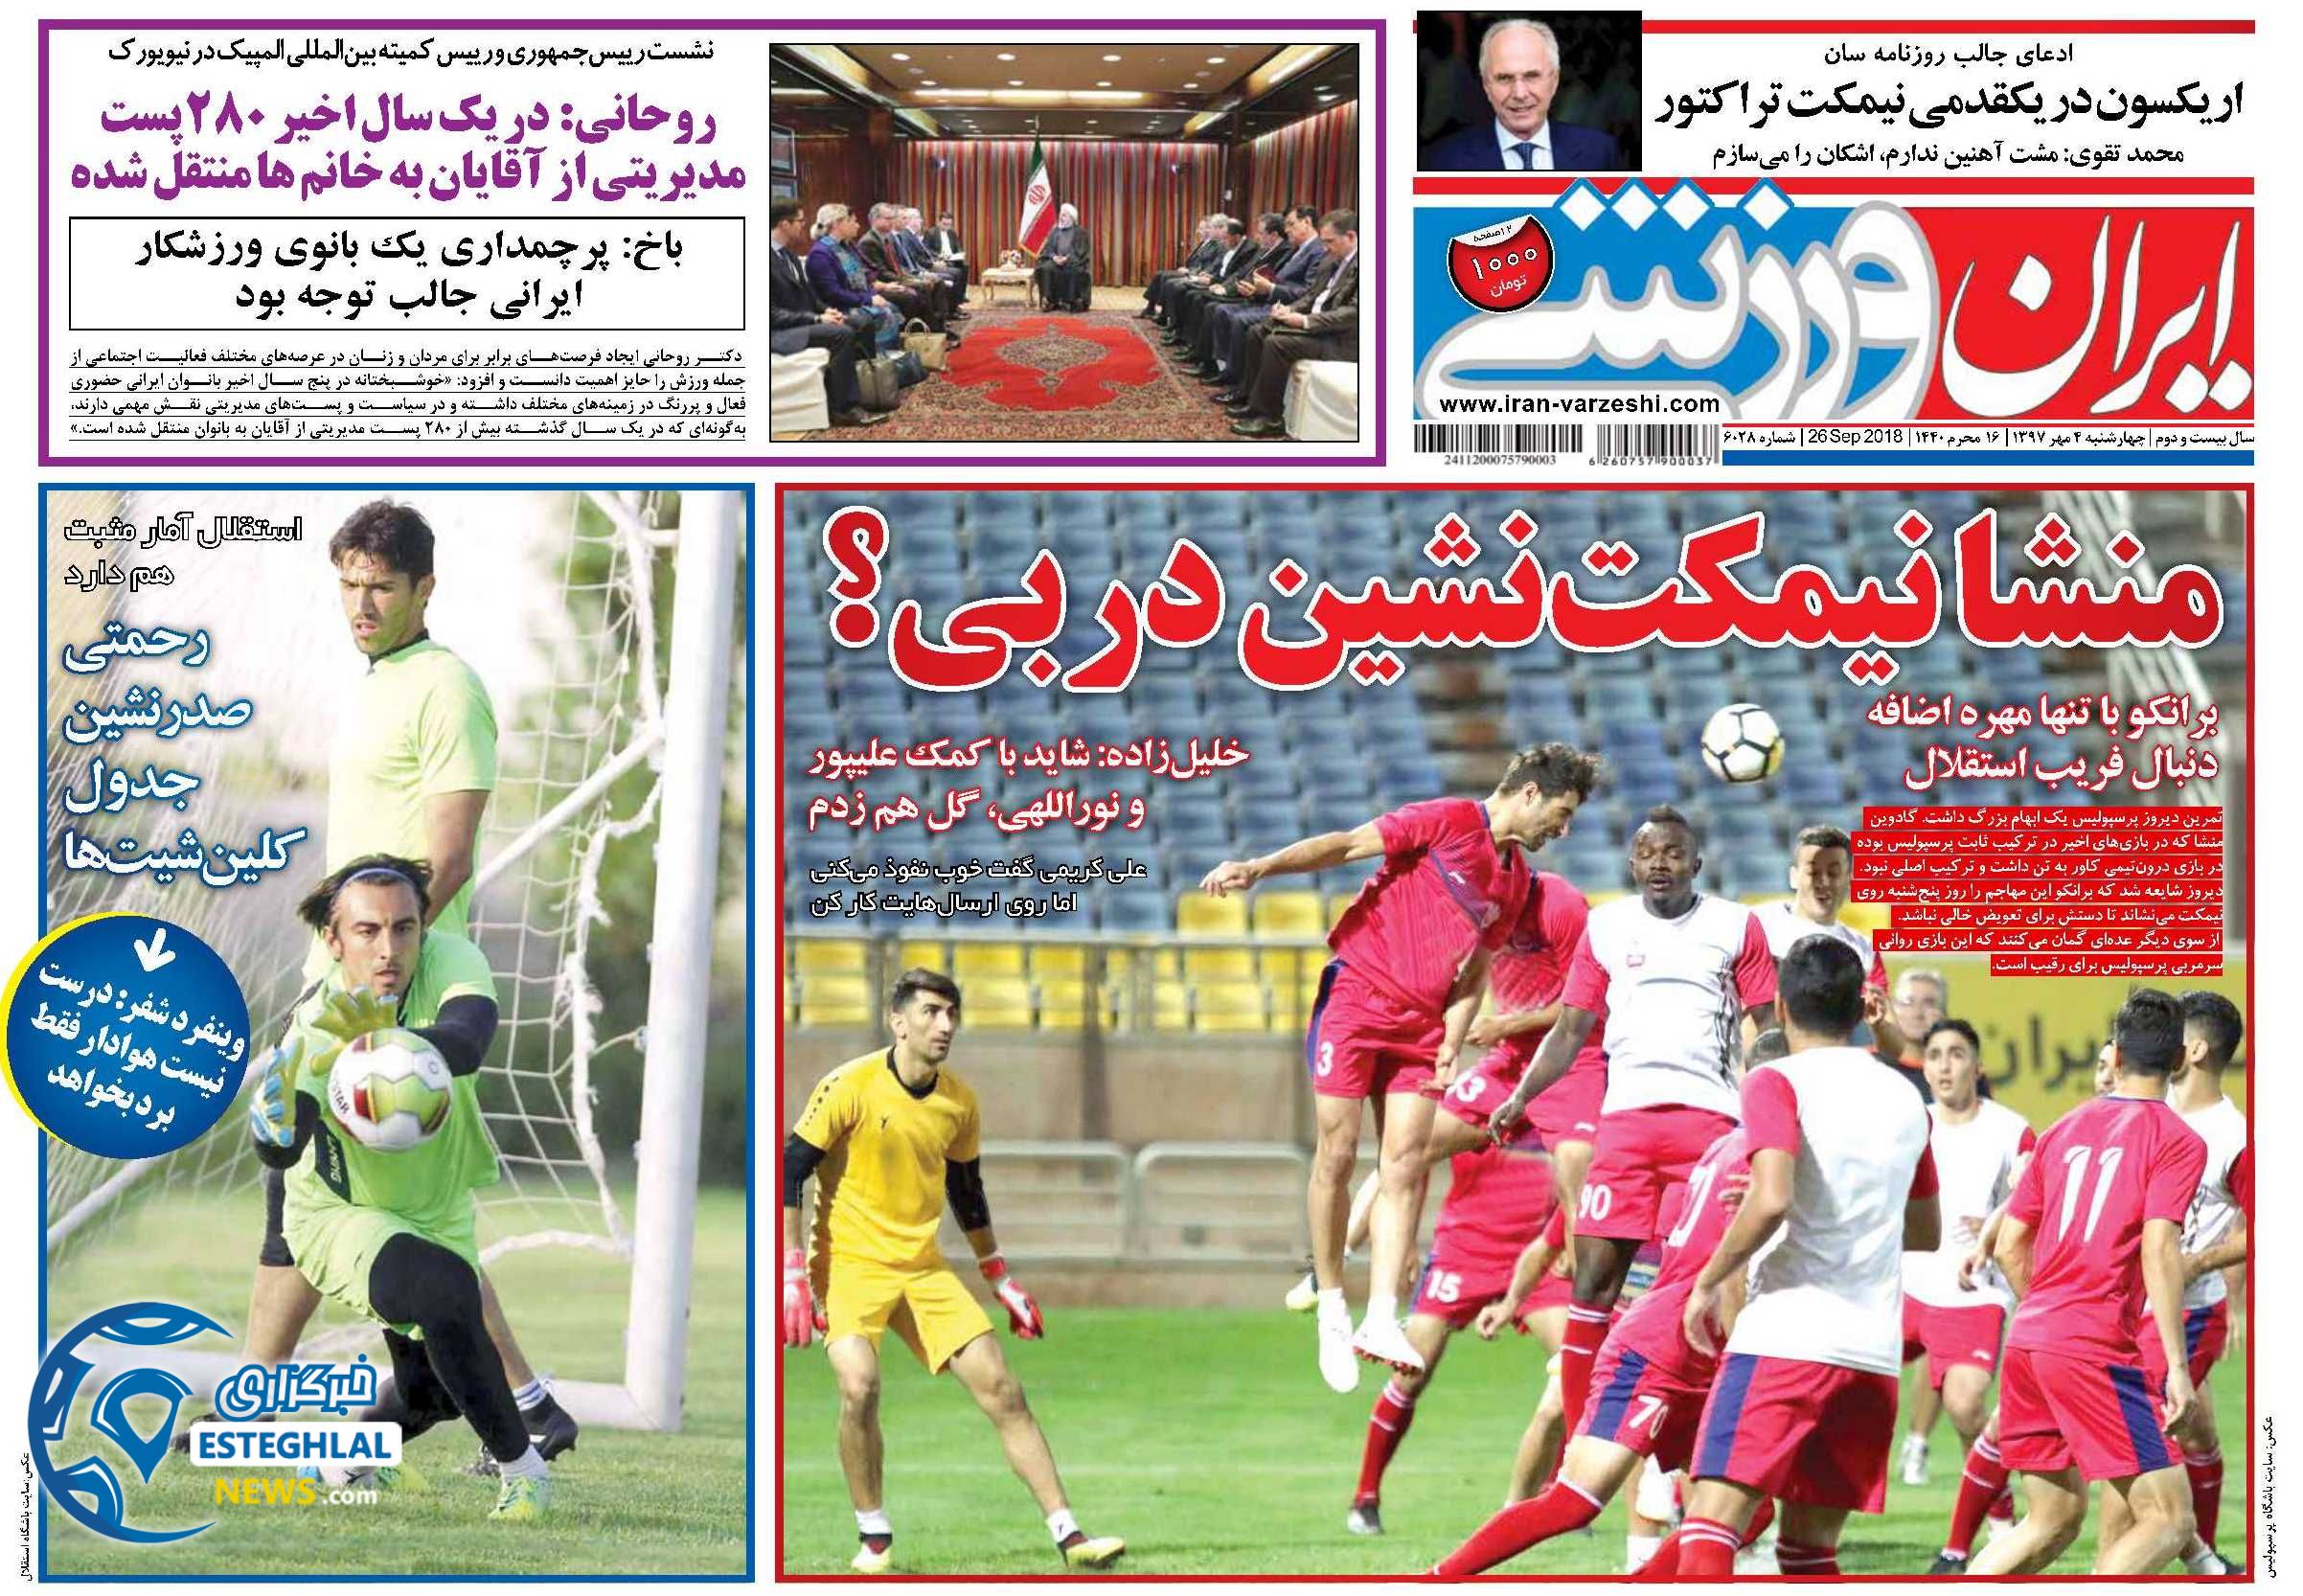 روزنامه ایران ورزشی چهارشنبه 4 مهر 1397 